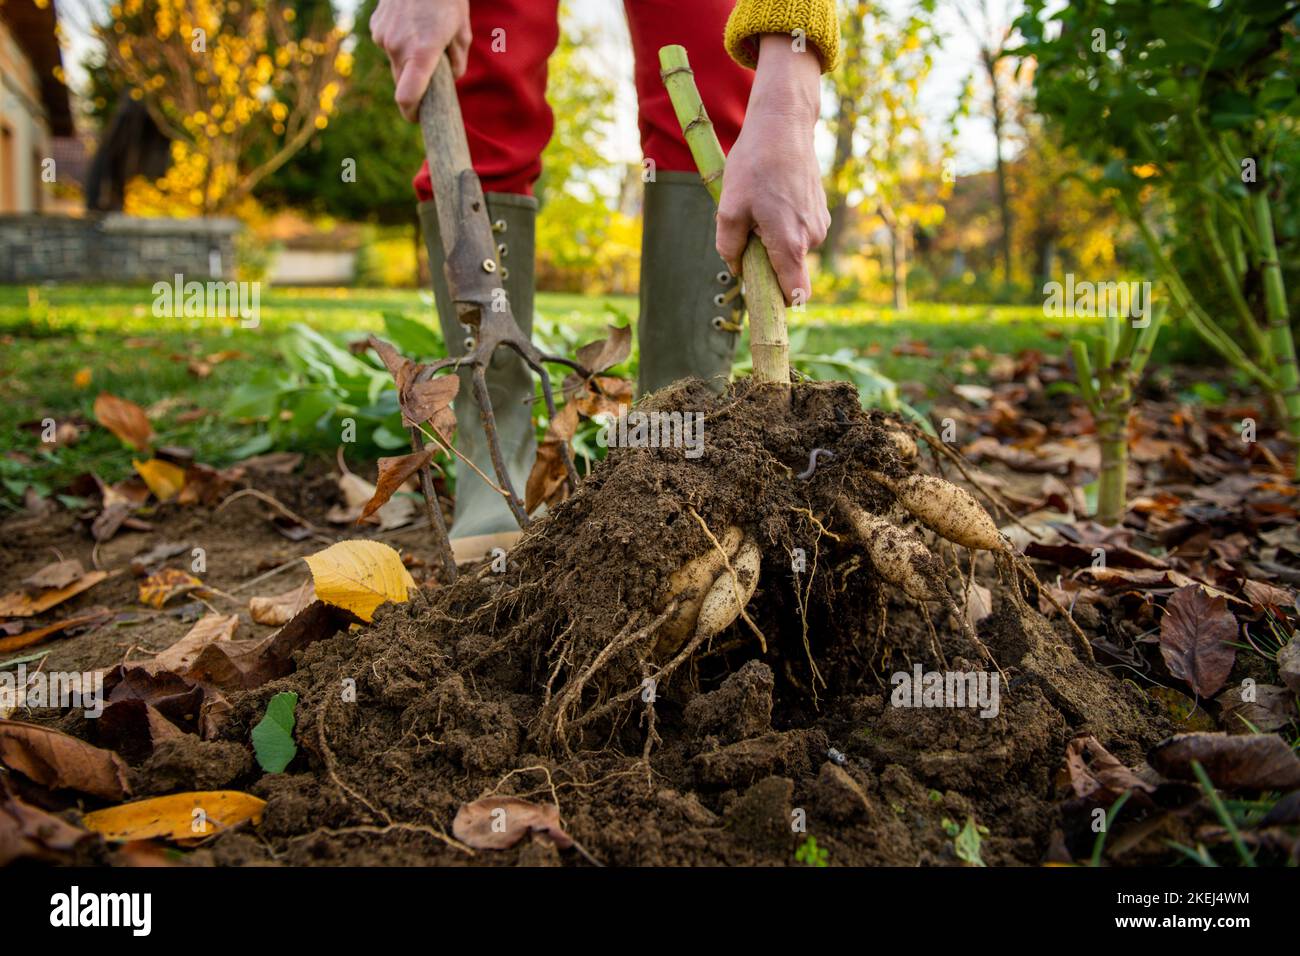 Frau gräbt Dahlia-Knollen mit einer Pitchfork und bereitet sie für die Winterlagerung vor. Jobs im Herbst im Gartenbau. Überwintern der Dahlia Knollen. Anheben d Stockfoto